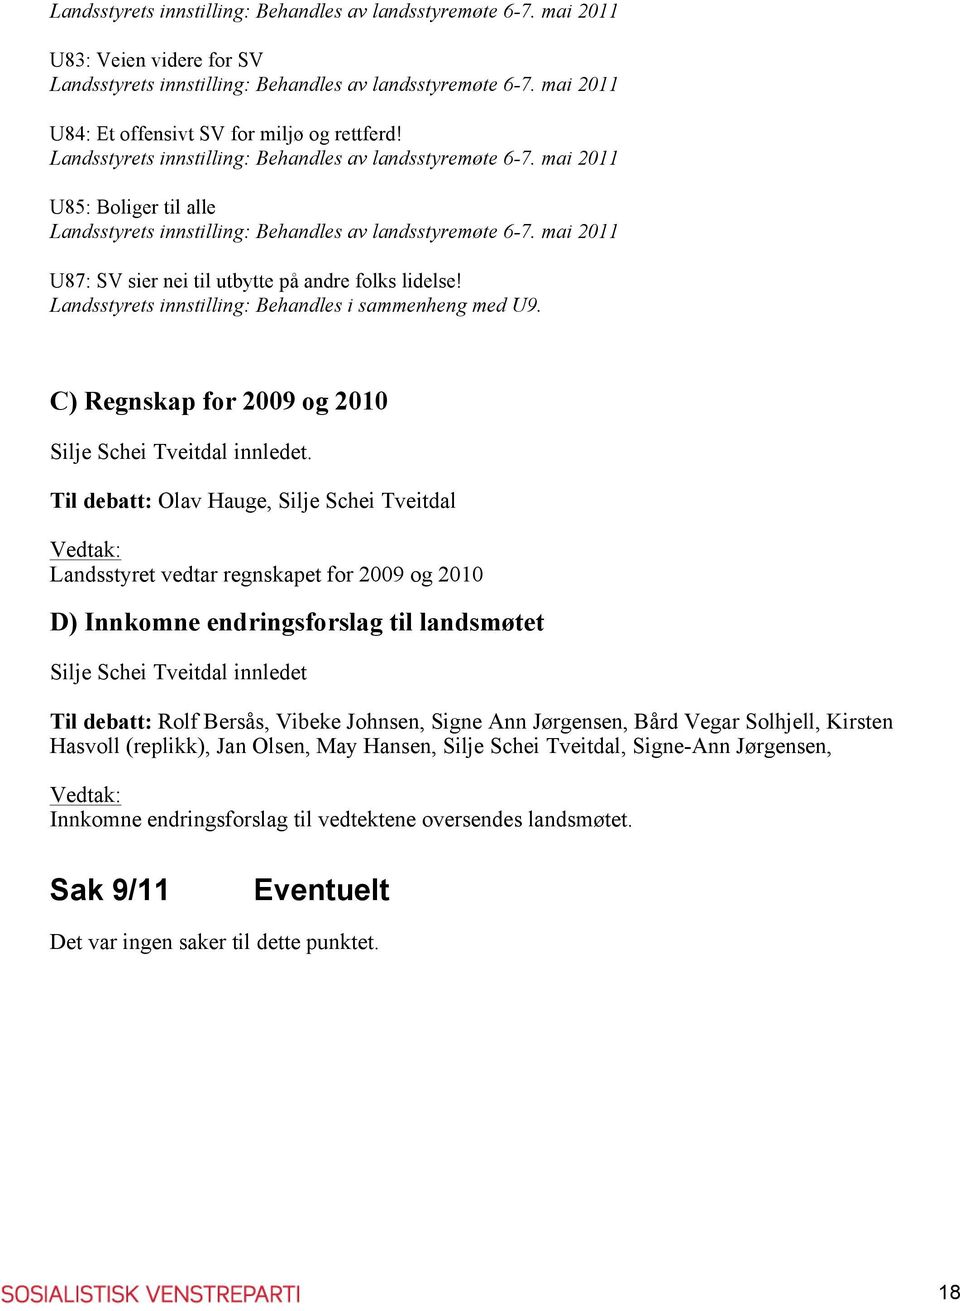 Til debatt: Olav Hauge, Silje Schei Tveitdal Vedtak: Landsstyret vedtar regnskapet for 2009 og 2010 D) Innkomne endringsforslag til landsmøtet Silje Schei Tveitdal innledet Til debatt: